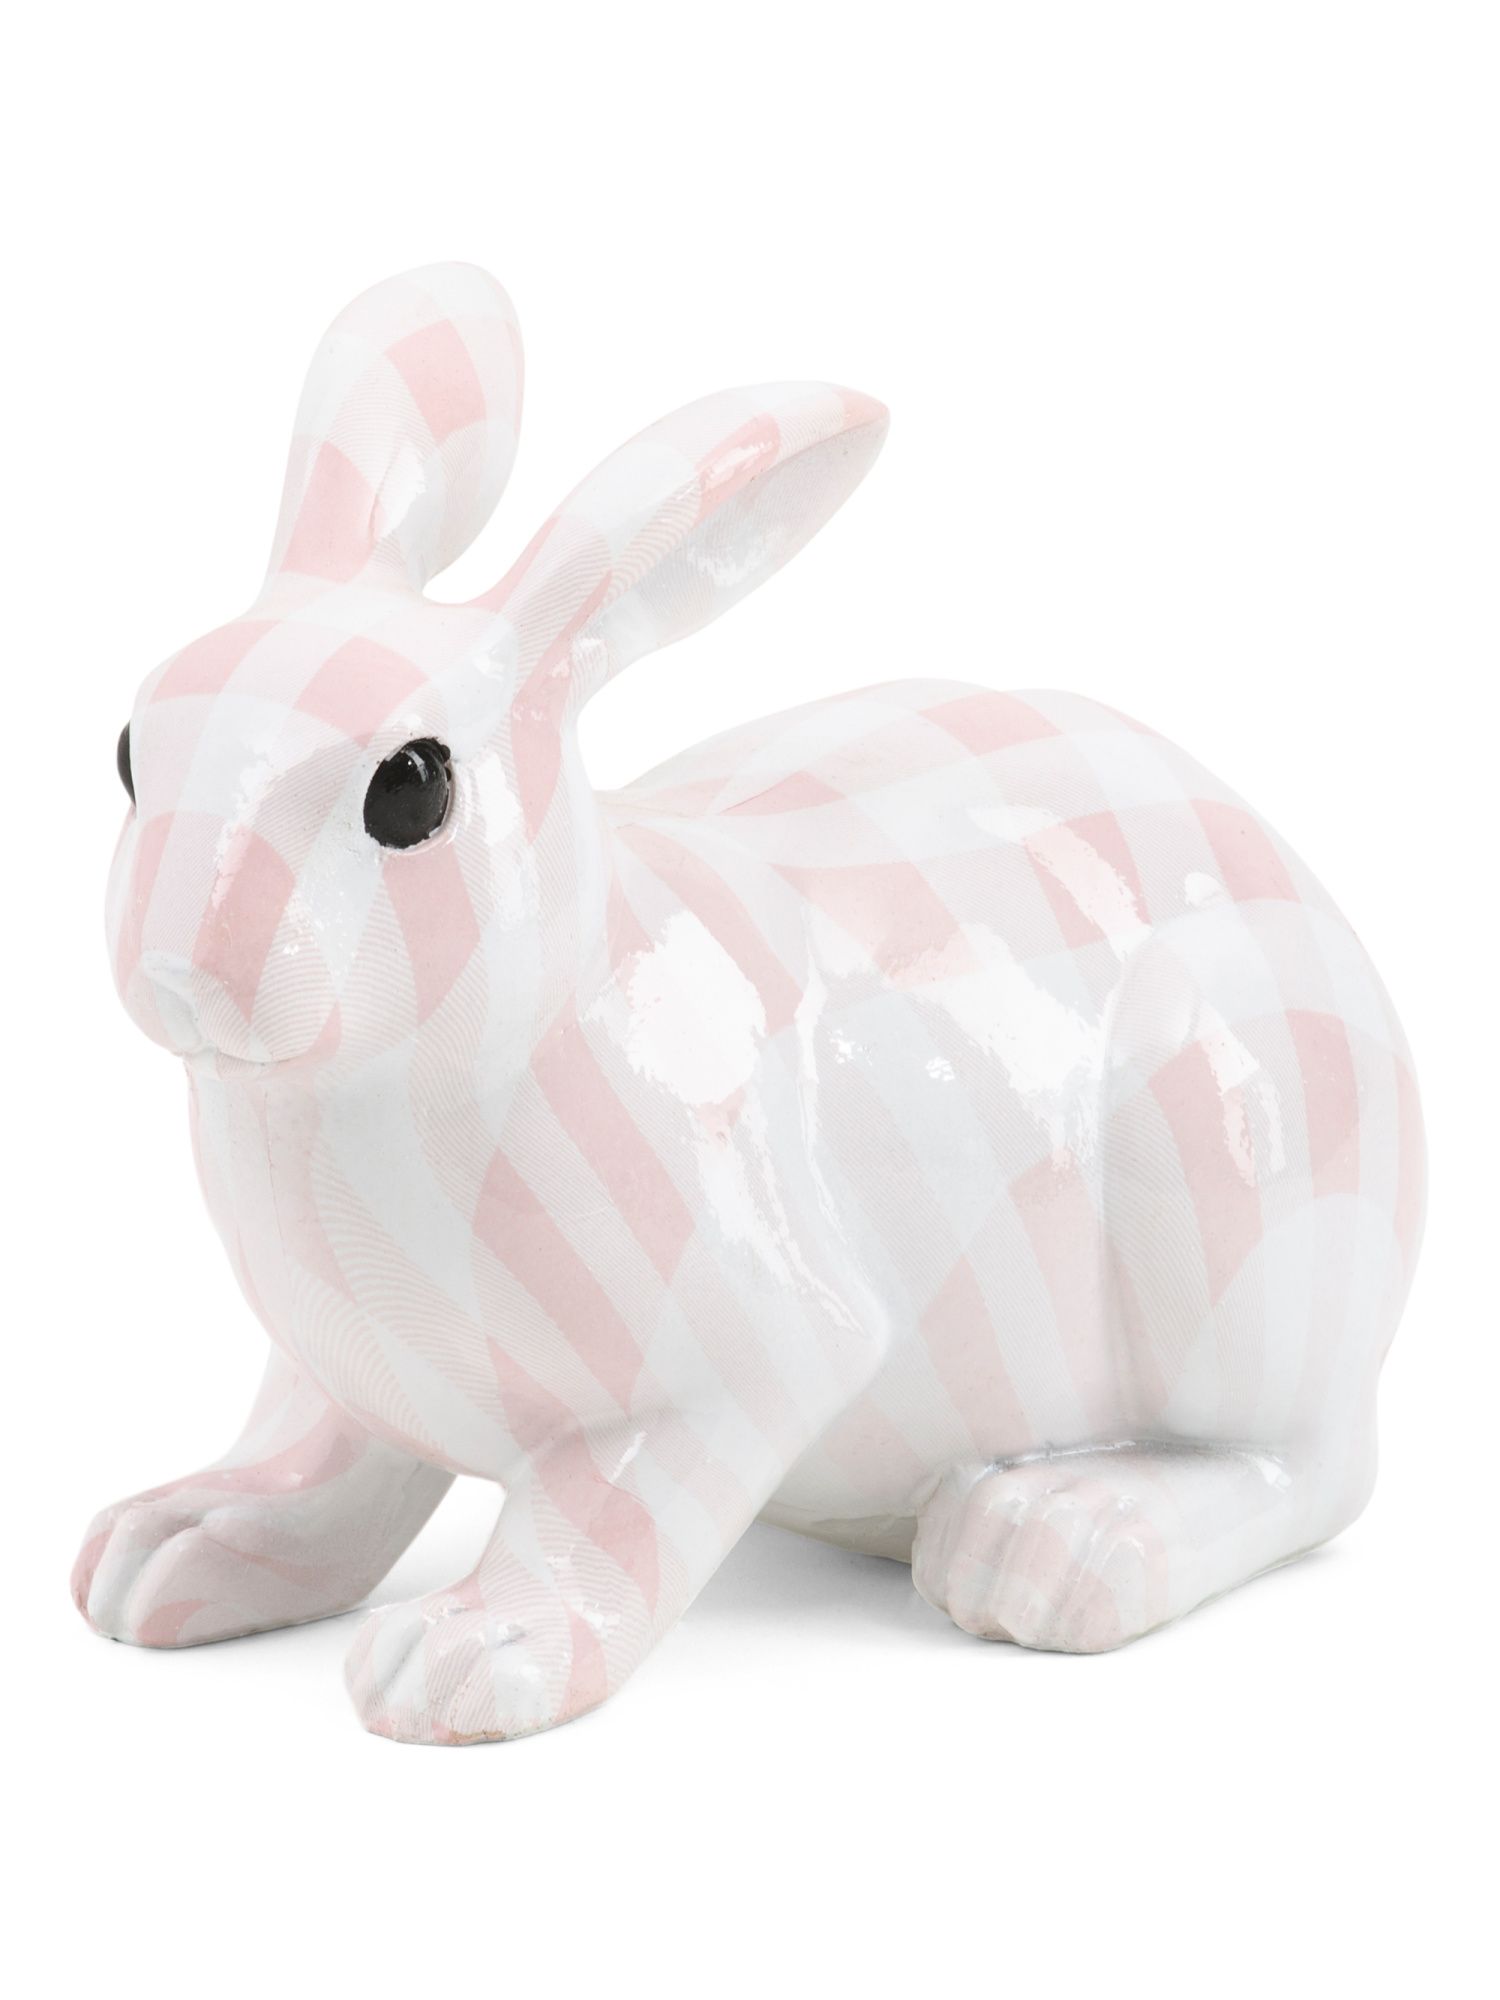 5in Resin Plaid Bunny | Pillows & Decor | Marshalls | Marshalls